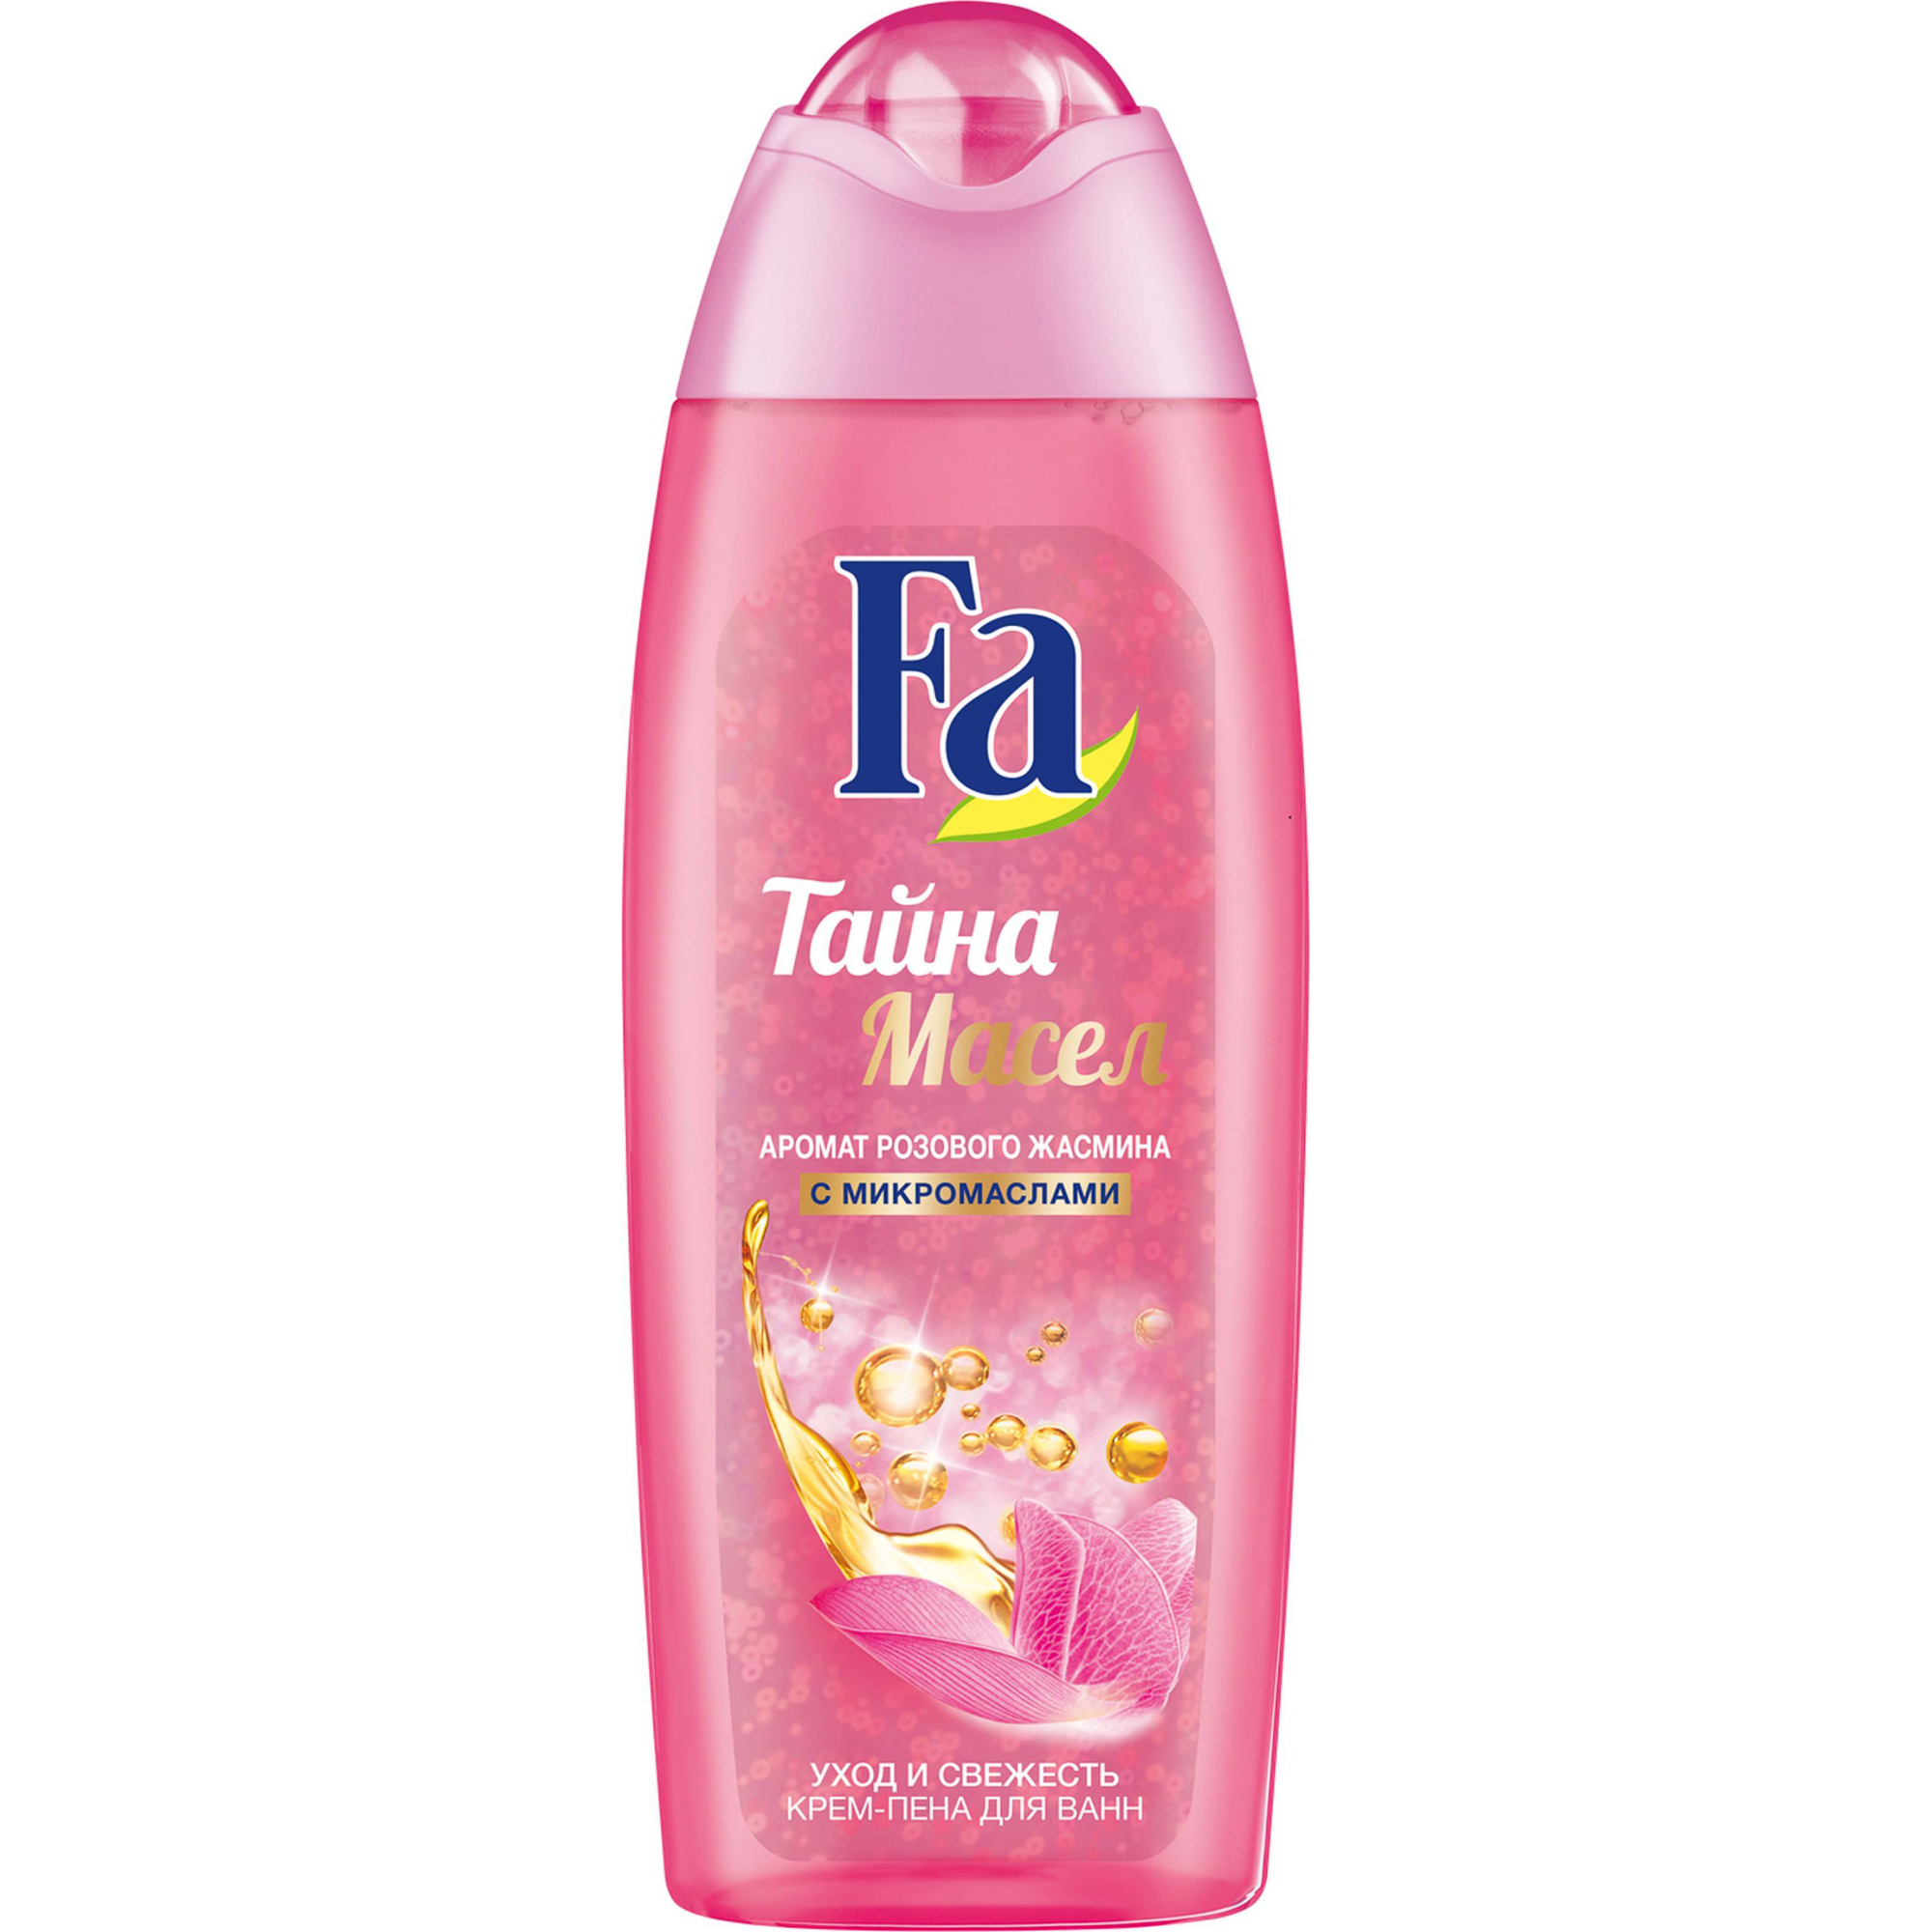 Крем-пена для ванны Fa Тайна масел розовый жасмин 500 мл сумка круглая из искусственной кожи 18 18 см розовый